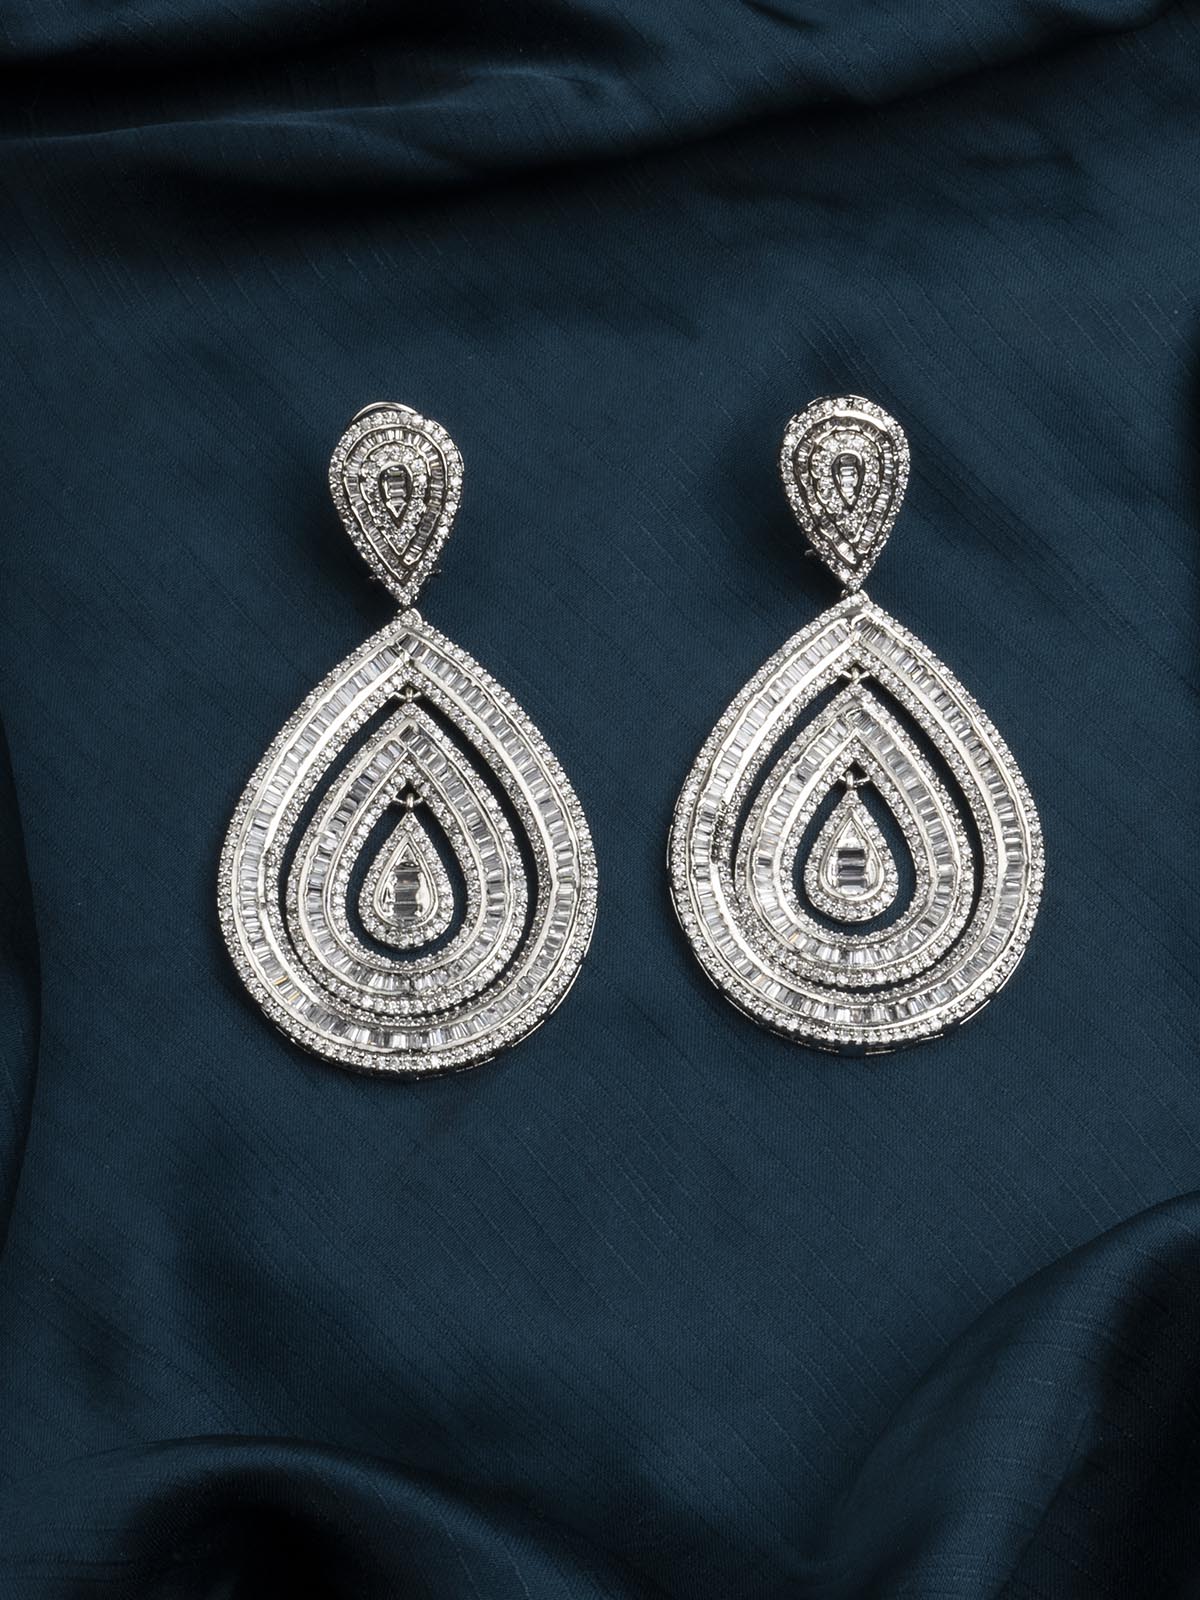 CZEAR519 - Silver Plated Faux Diamond Earrings